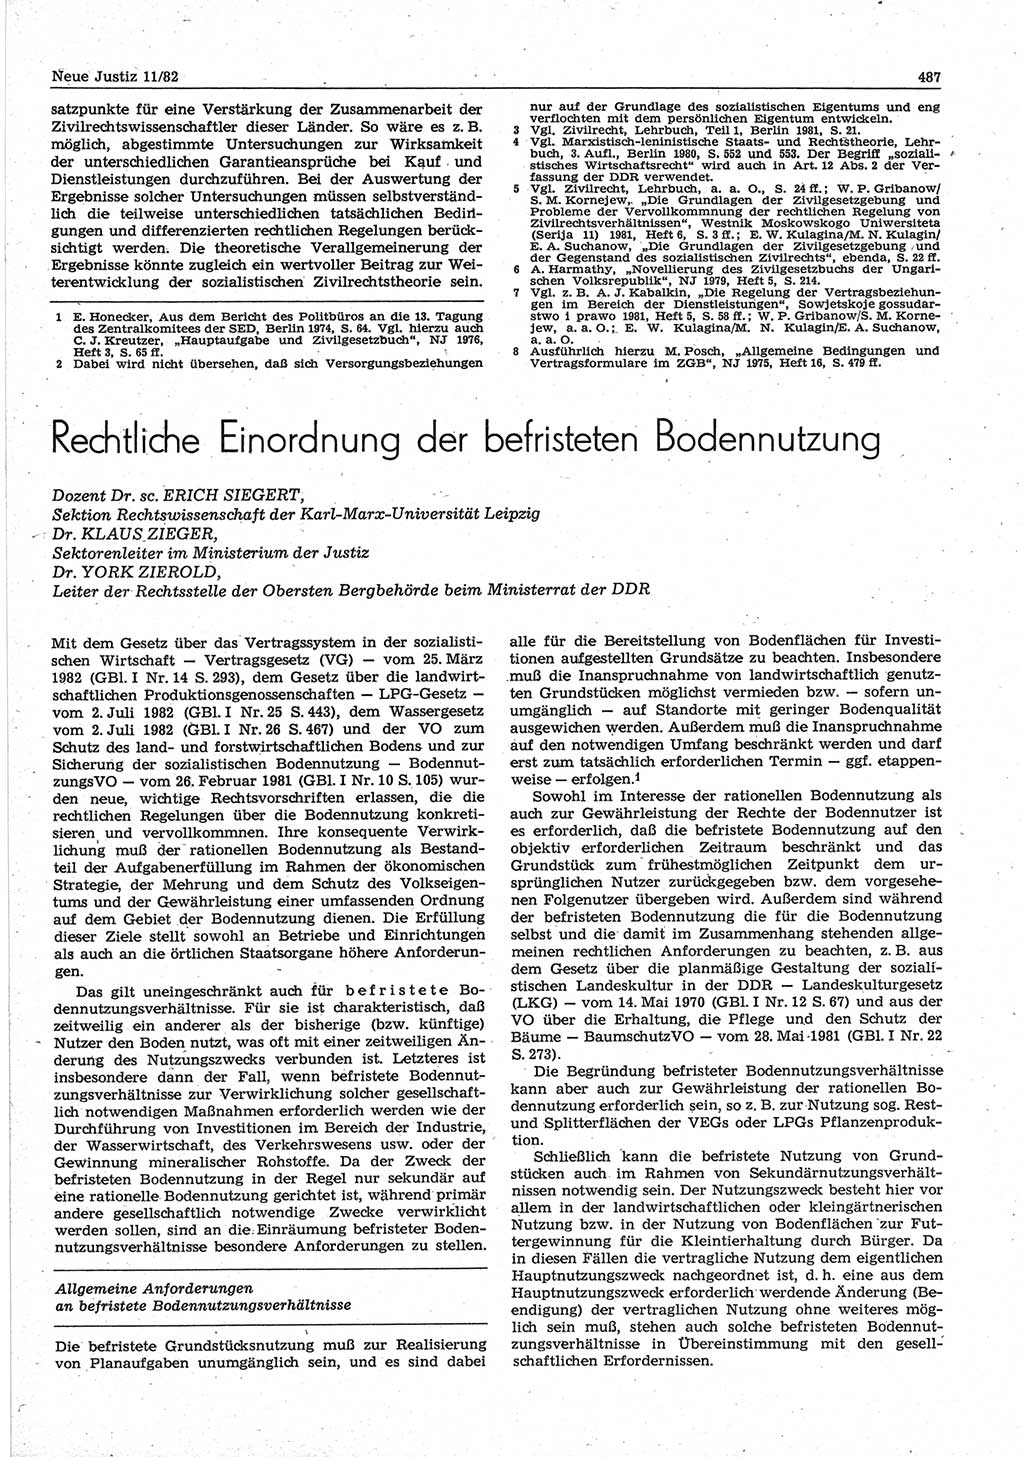 Neue Justiz (NJ), Zeitschrift für sozialistisches Recht und Gesetzlichkeit [Deutsche Demokratische Republik (DDR)], 36. Jahrgang 1982, Seite 487 (NJ DDR 1982, S. 487)